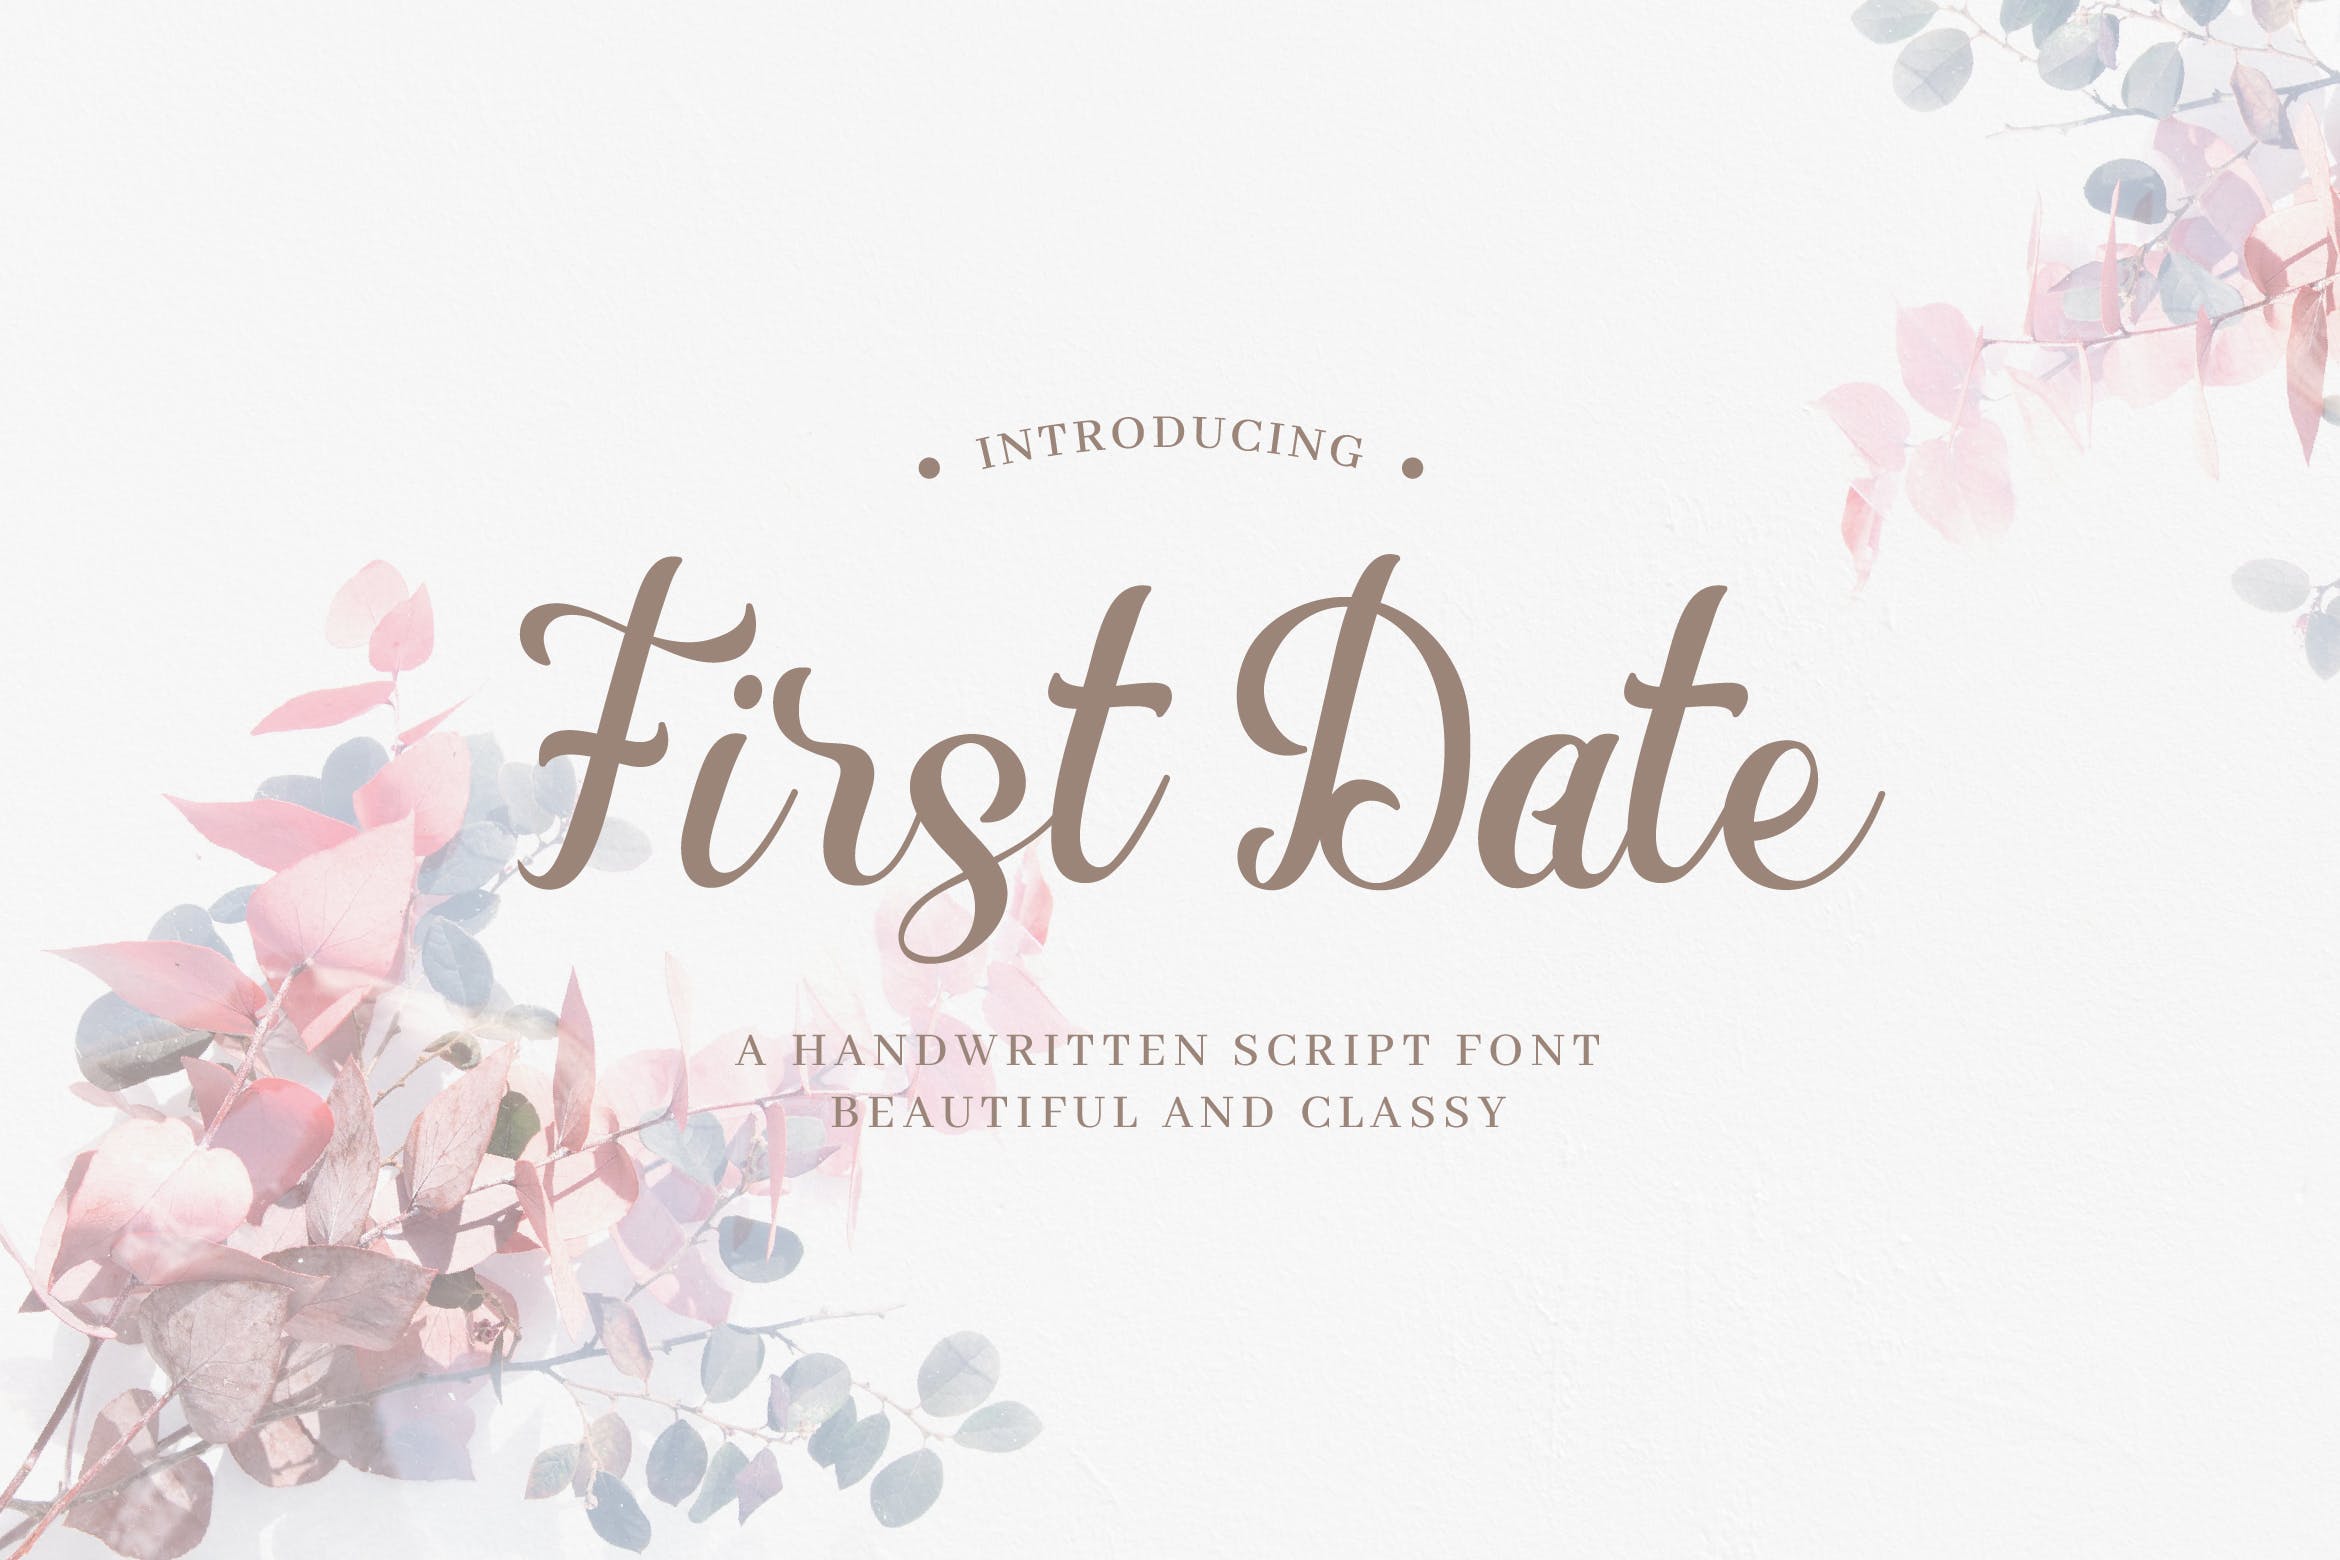 浪漫装饰设计风格英文书法艺术字体下载 First Date – Romantic Handwritten Script插图